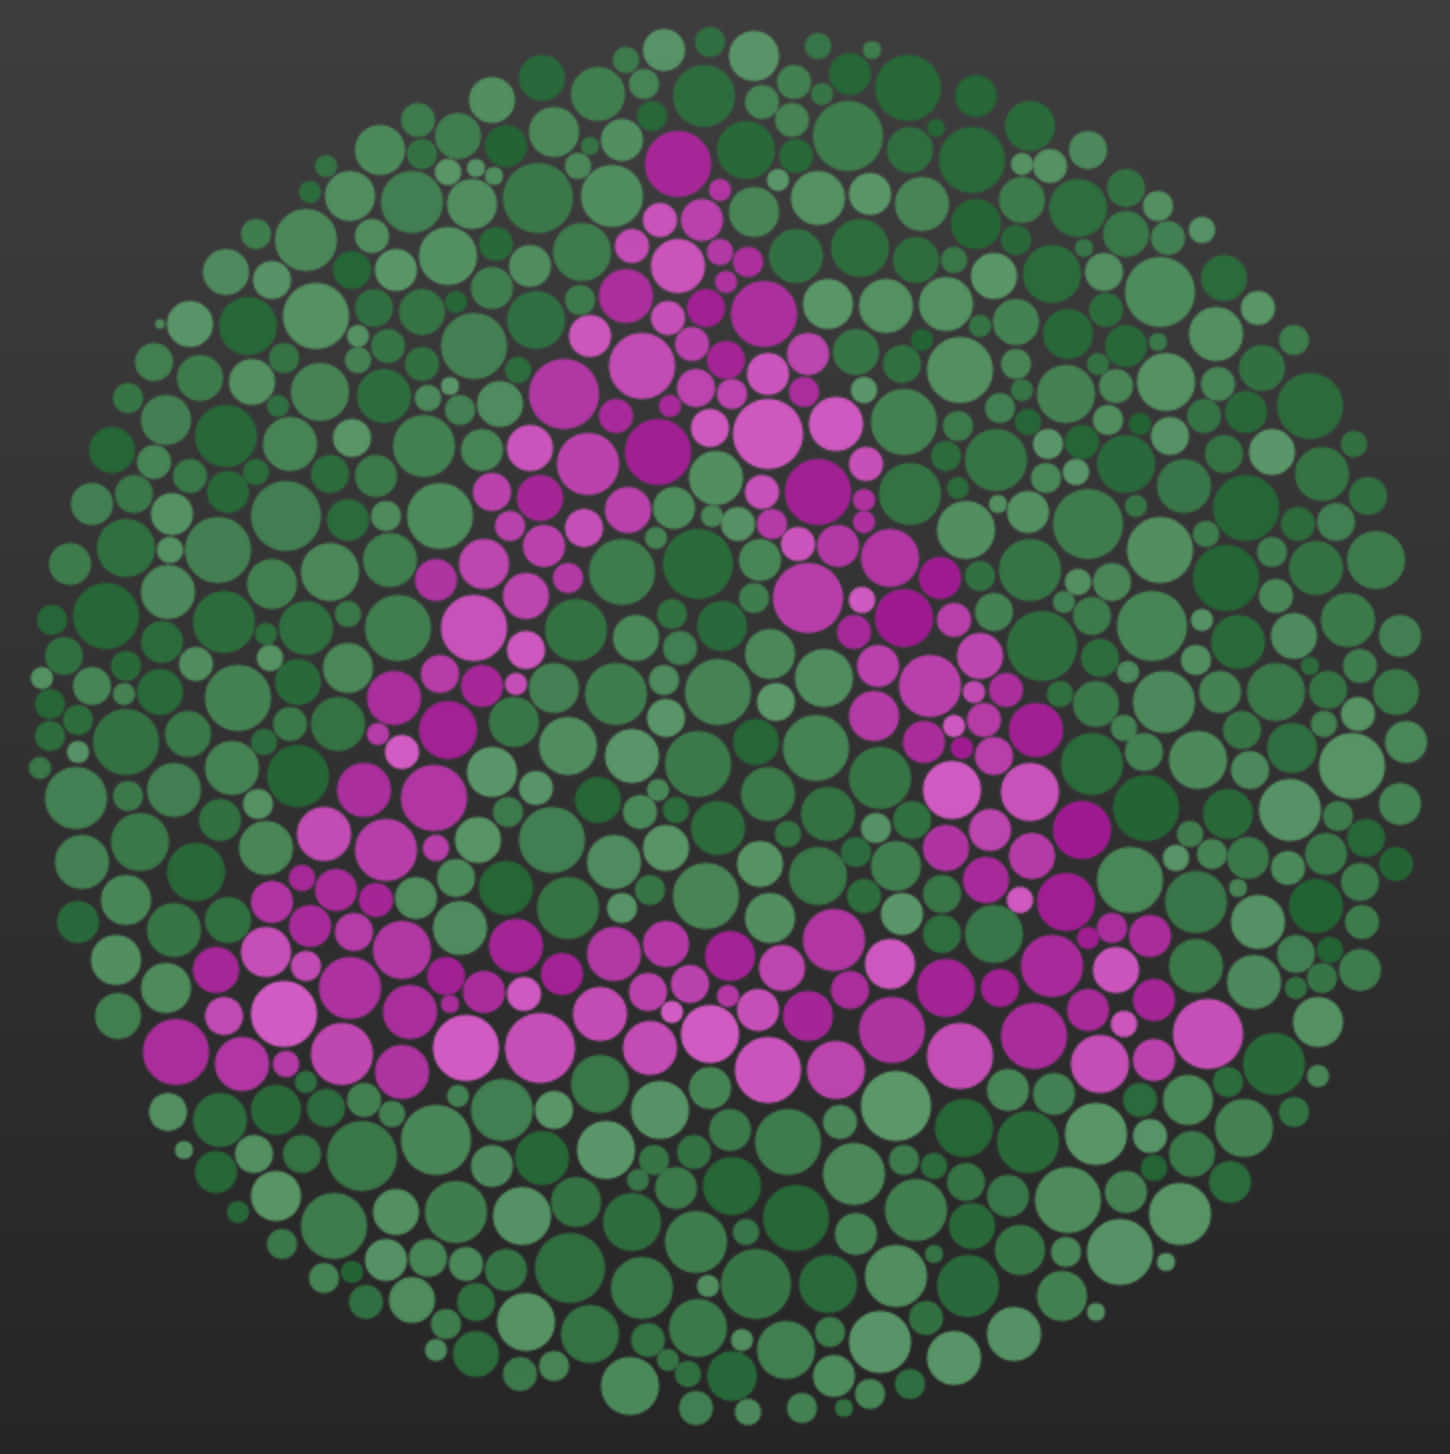 En grøn og lilla cirkel med en trekant i midten